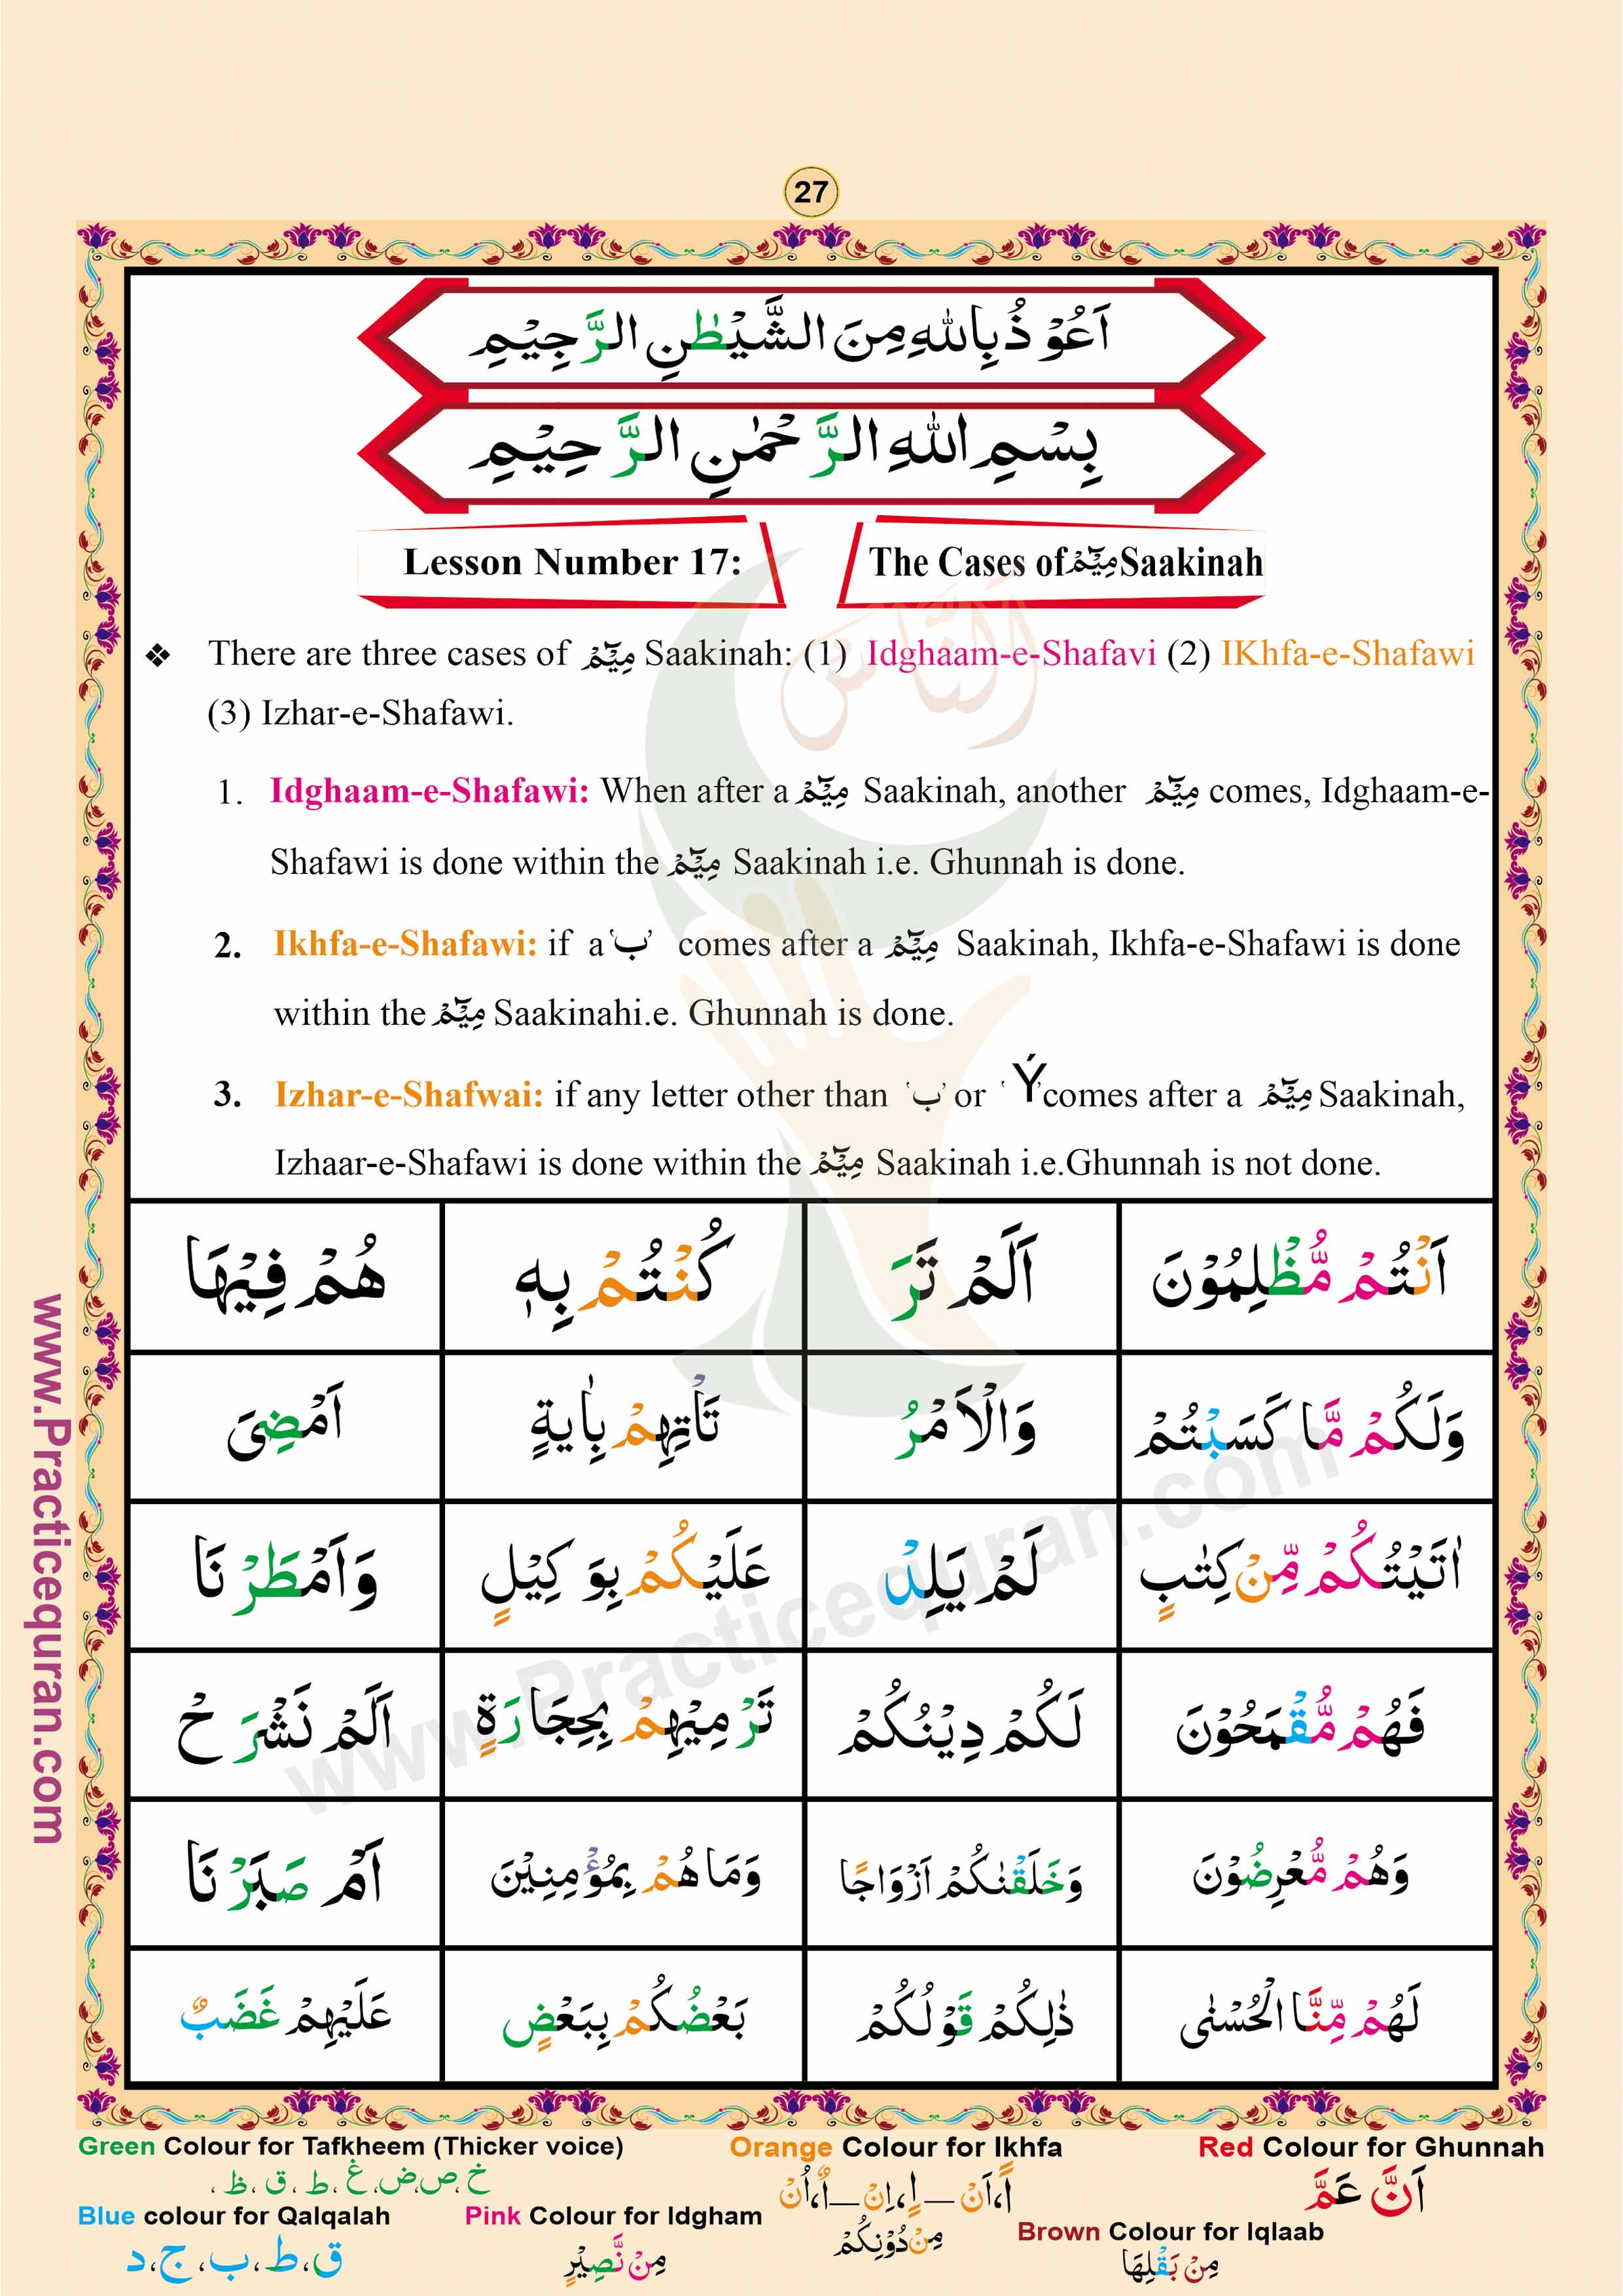 Read English Noorani Qaidah Page No 27, Practice Quran